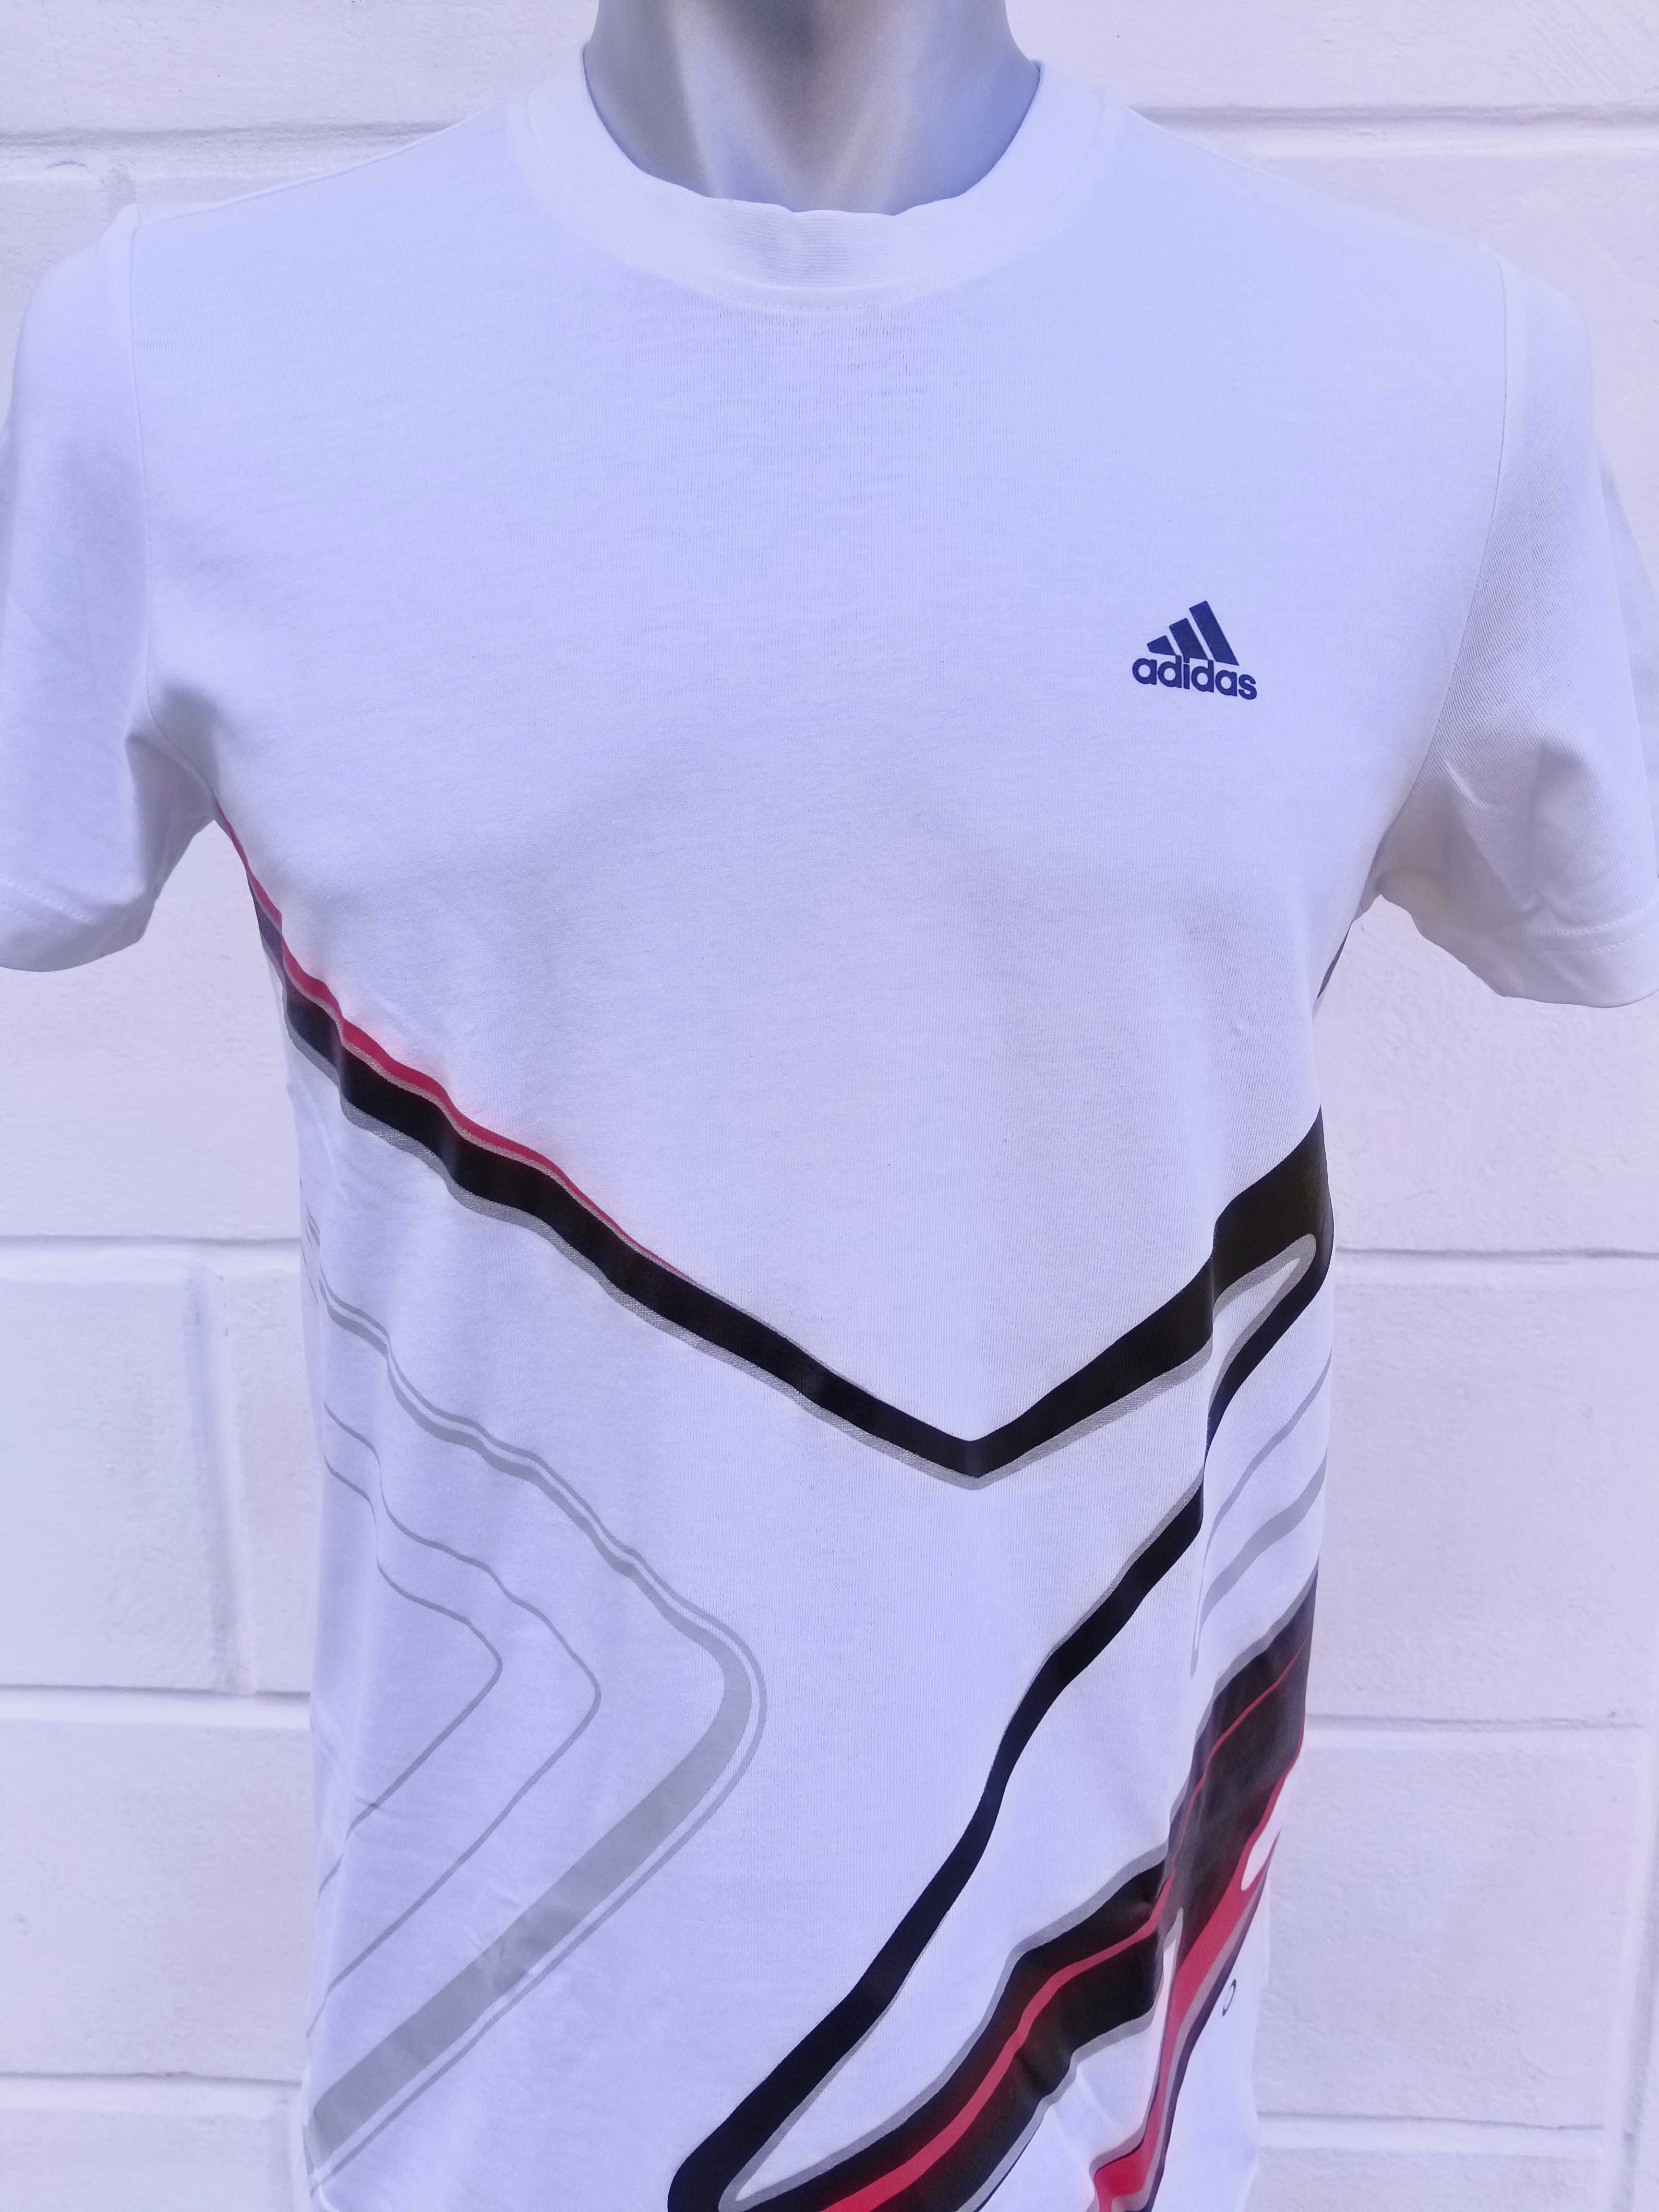 Мужская футболка Adidas Chrome S/S tee1 [M]